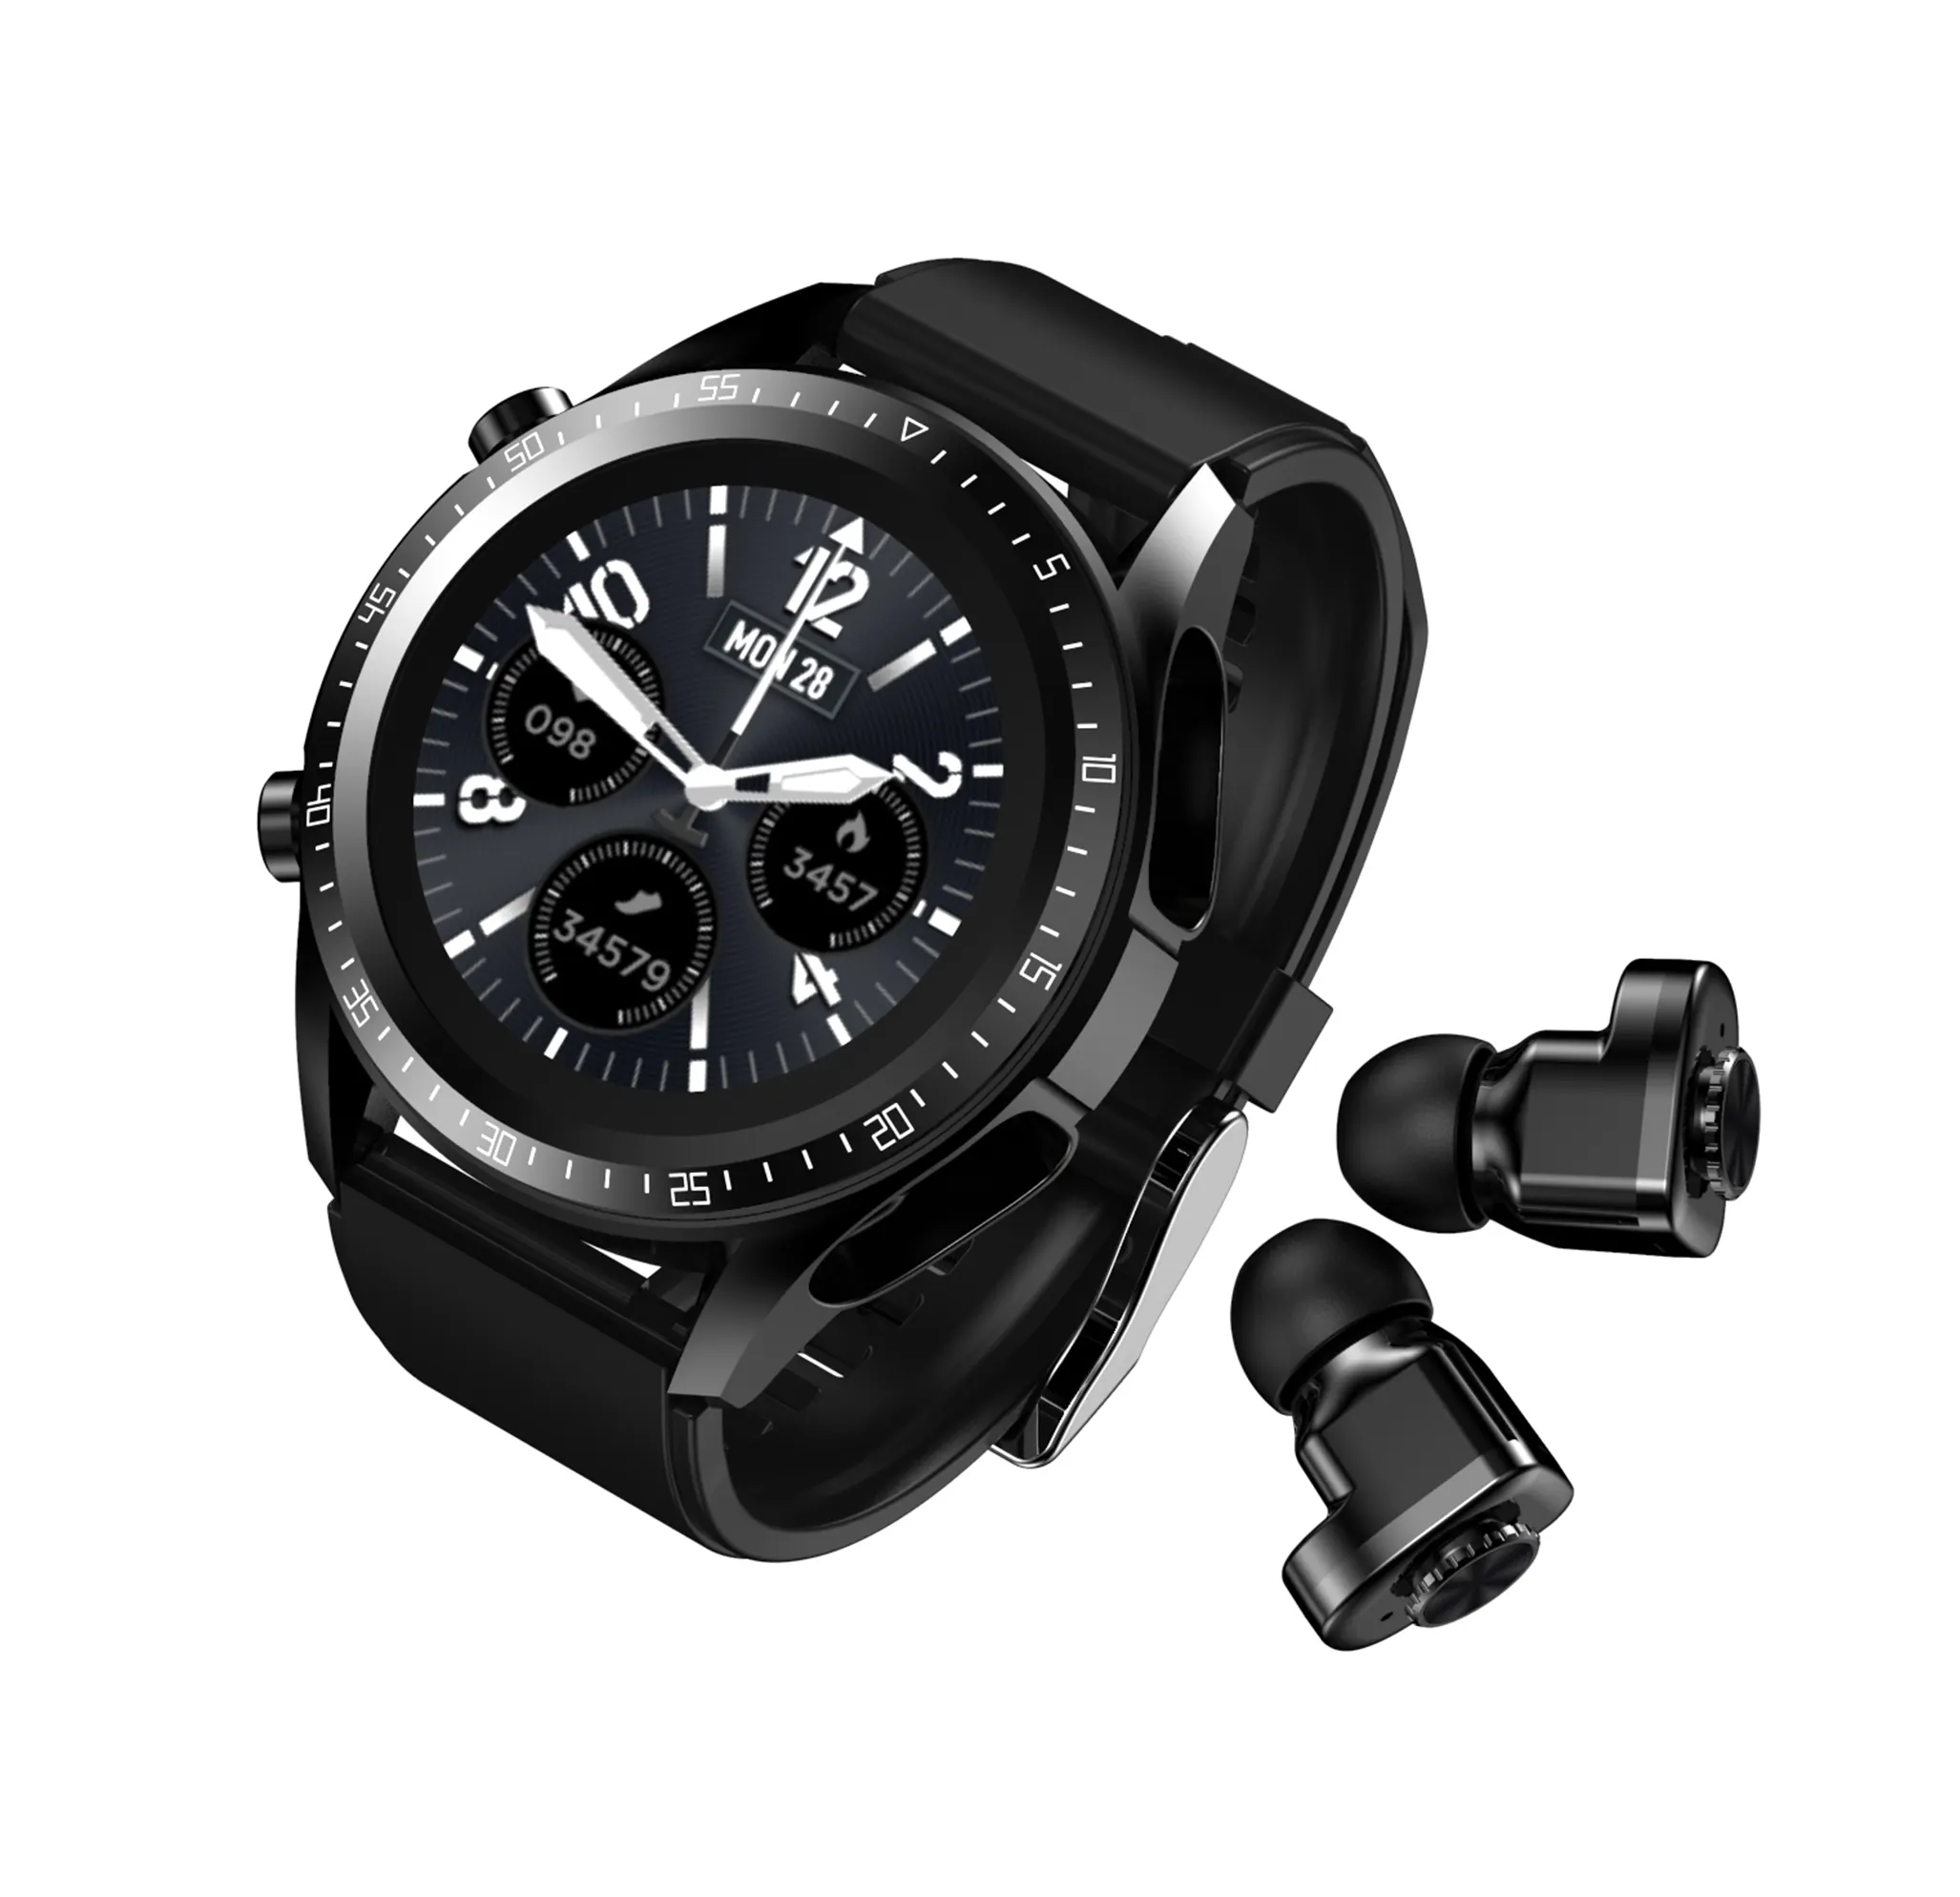 t92 tws 2-in-1 jm03 Heart Rate 2 in 1 TWS reloj inteligente smartwatch Smart Watch with bluetooth headphones headsets earbuds